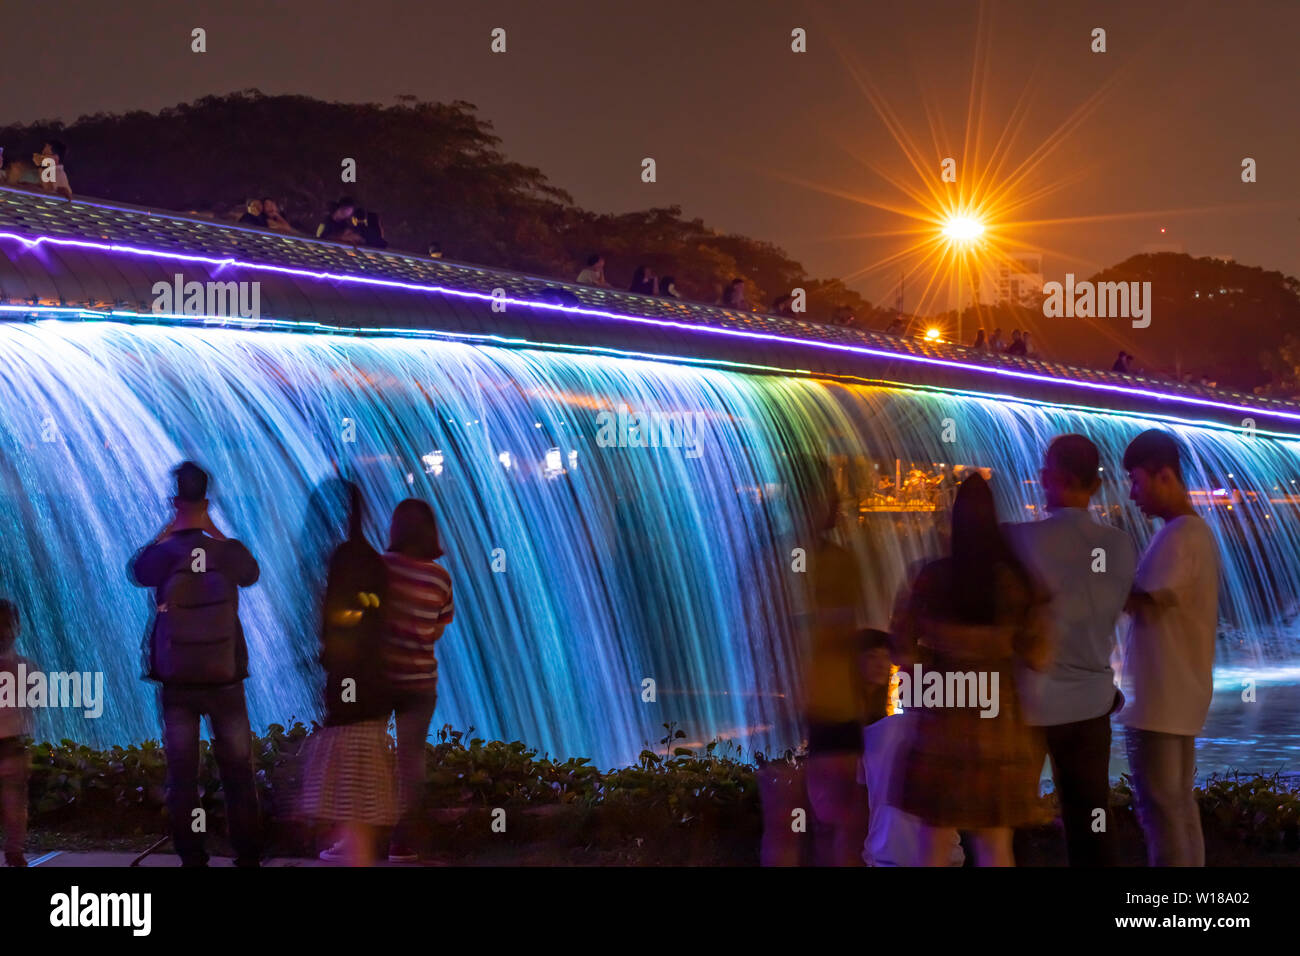 Die Menschen genießen die Starlight Brücke oder Anh sao Brücke in Phu My hung Bezirk von Ho Chi Minh City Vietnam. Es ist ein beleuchteter Wasserfall solarpowered Stockfoto